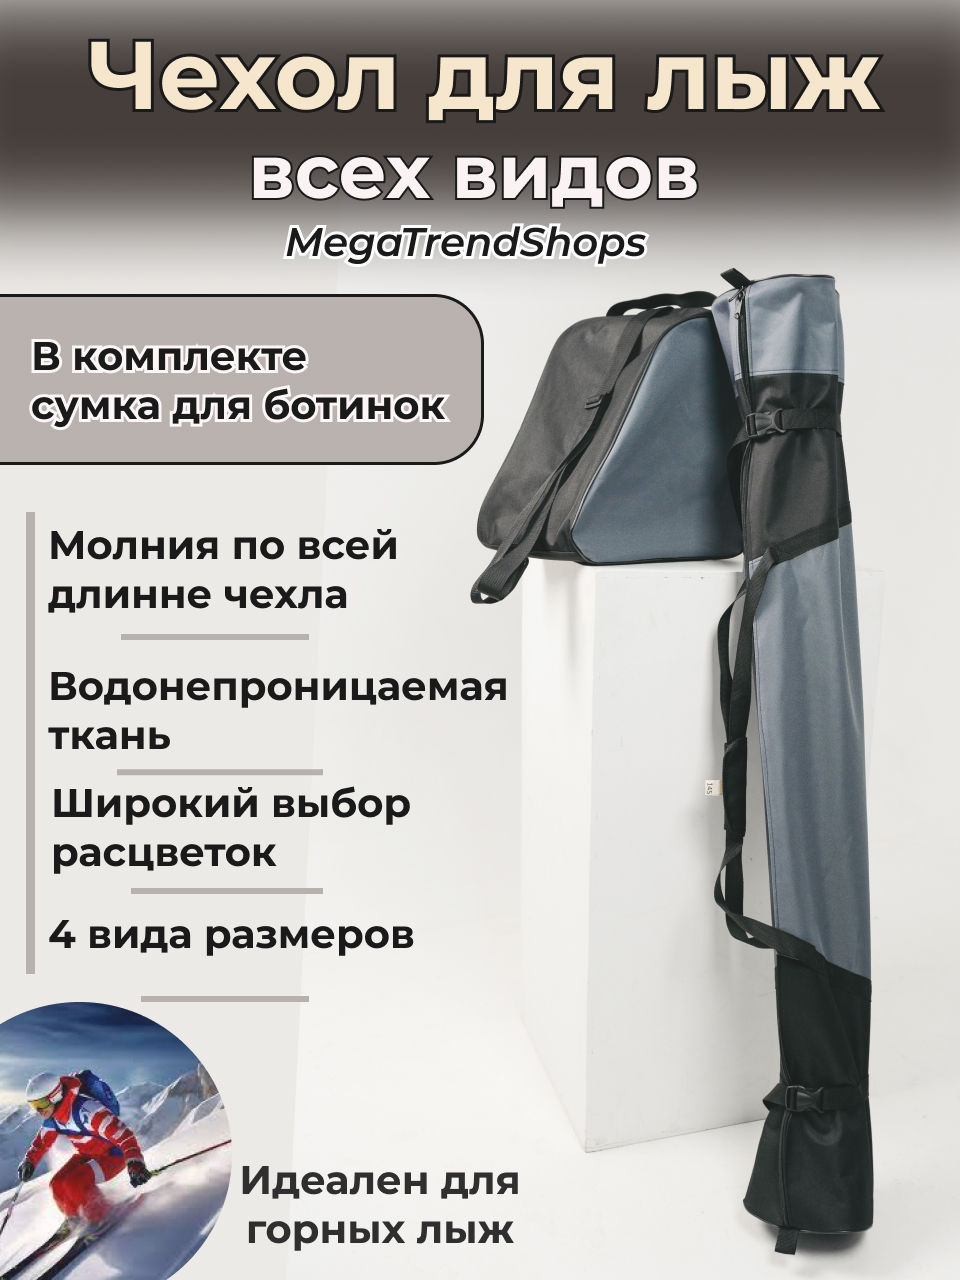 Чехол для лыж всех видов спортивный с сумкой для ботинок MegaTrendShops серый 185 см